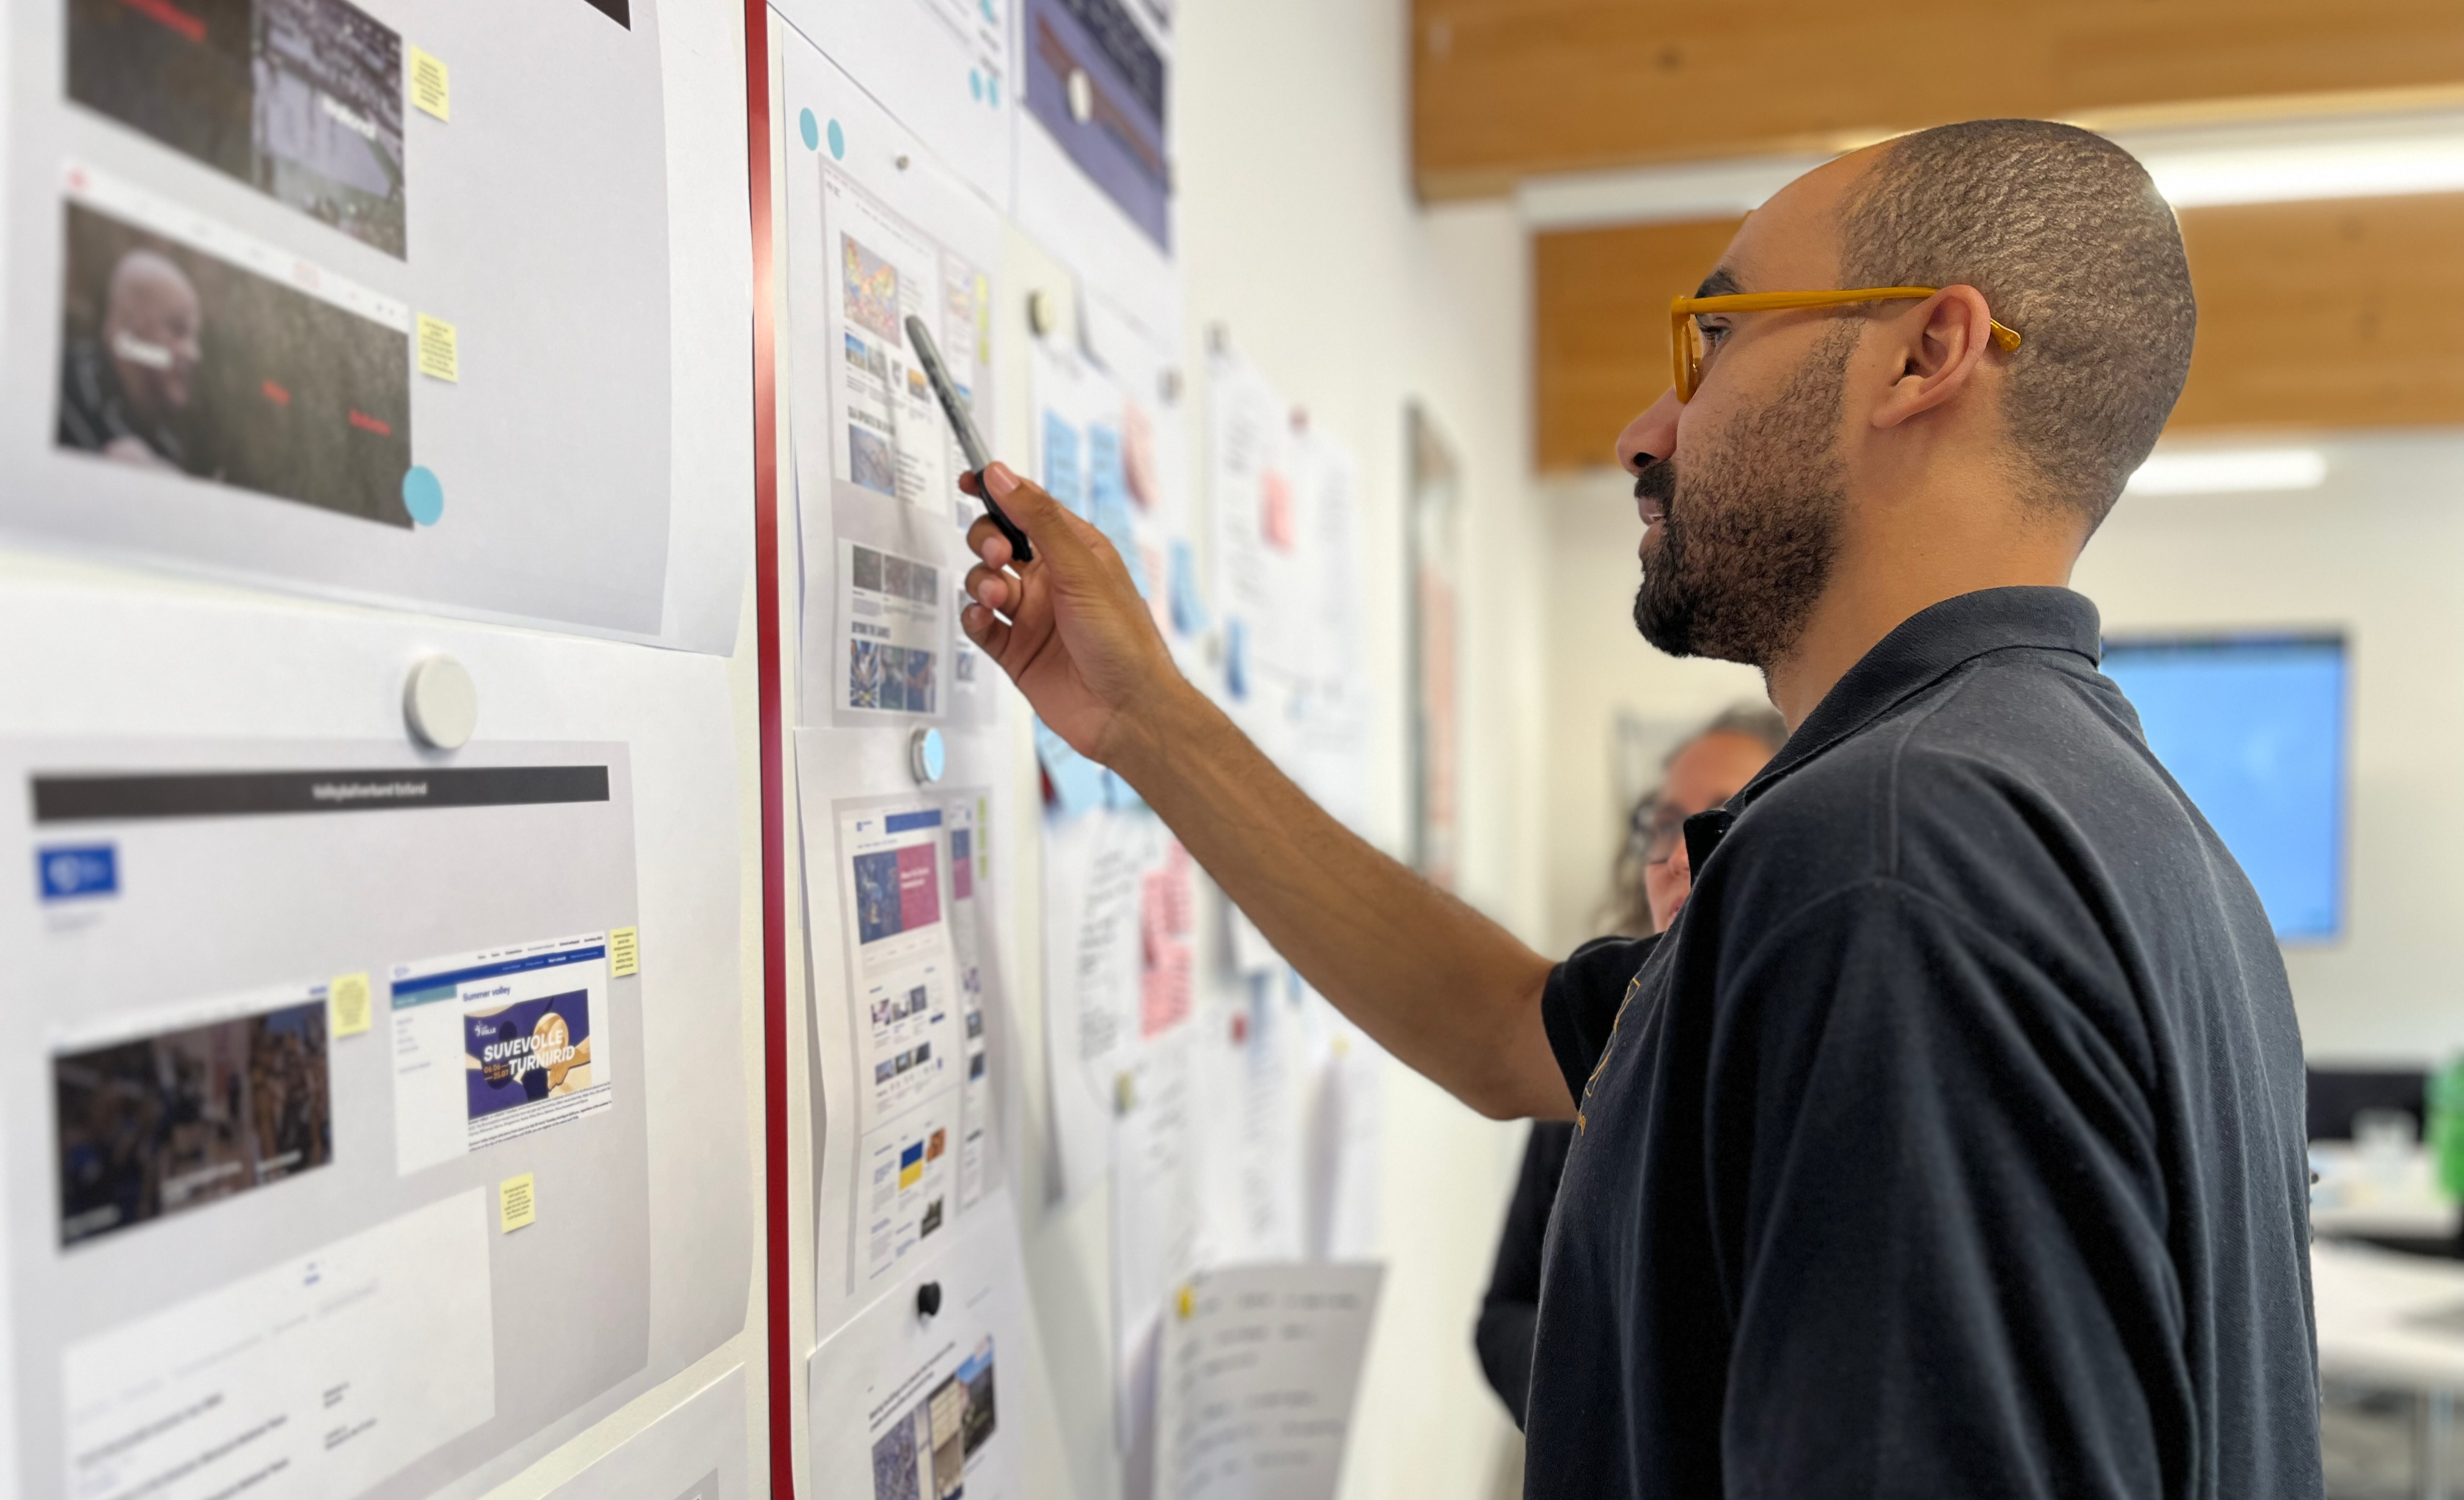 Der Designer David zeigt auf Bildschirmentwürfe auf einem Whiteboard, die Ideen und Konzepte illustrieren.